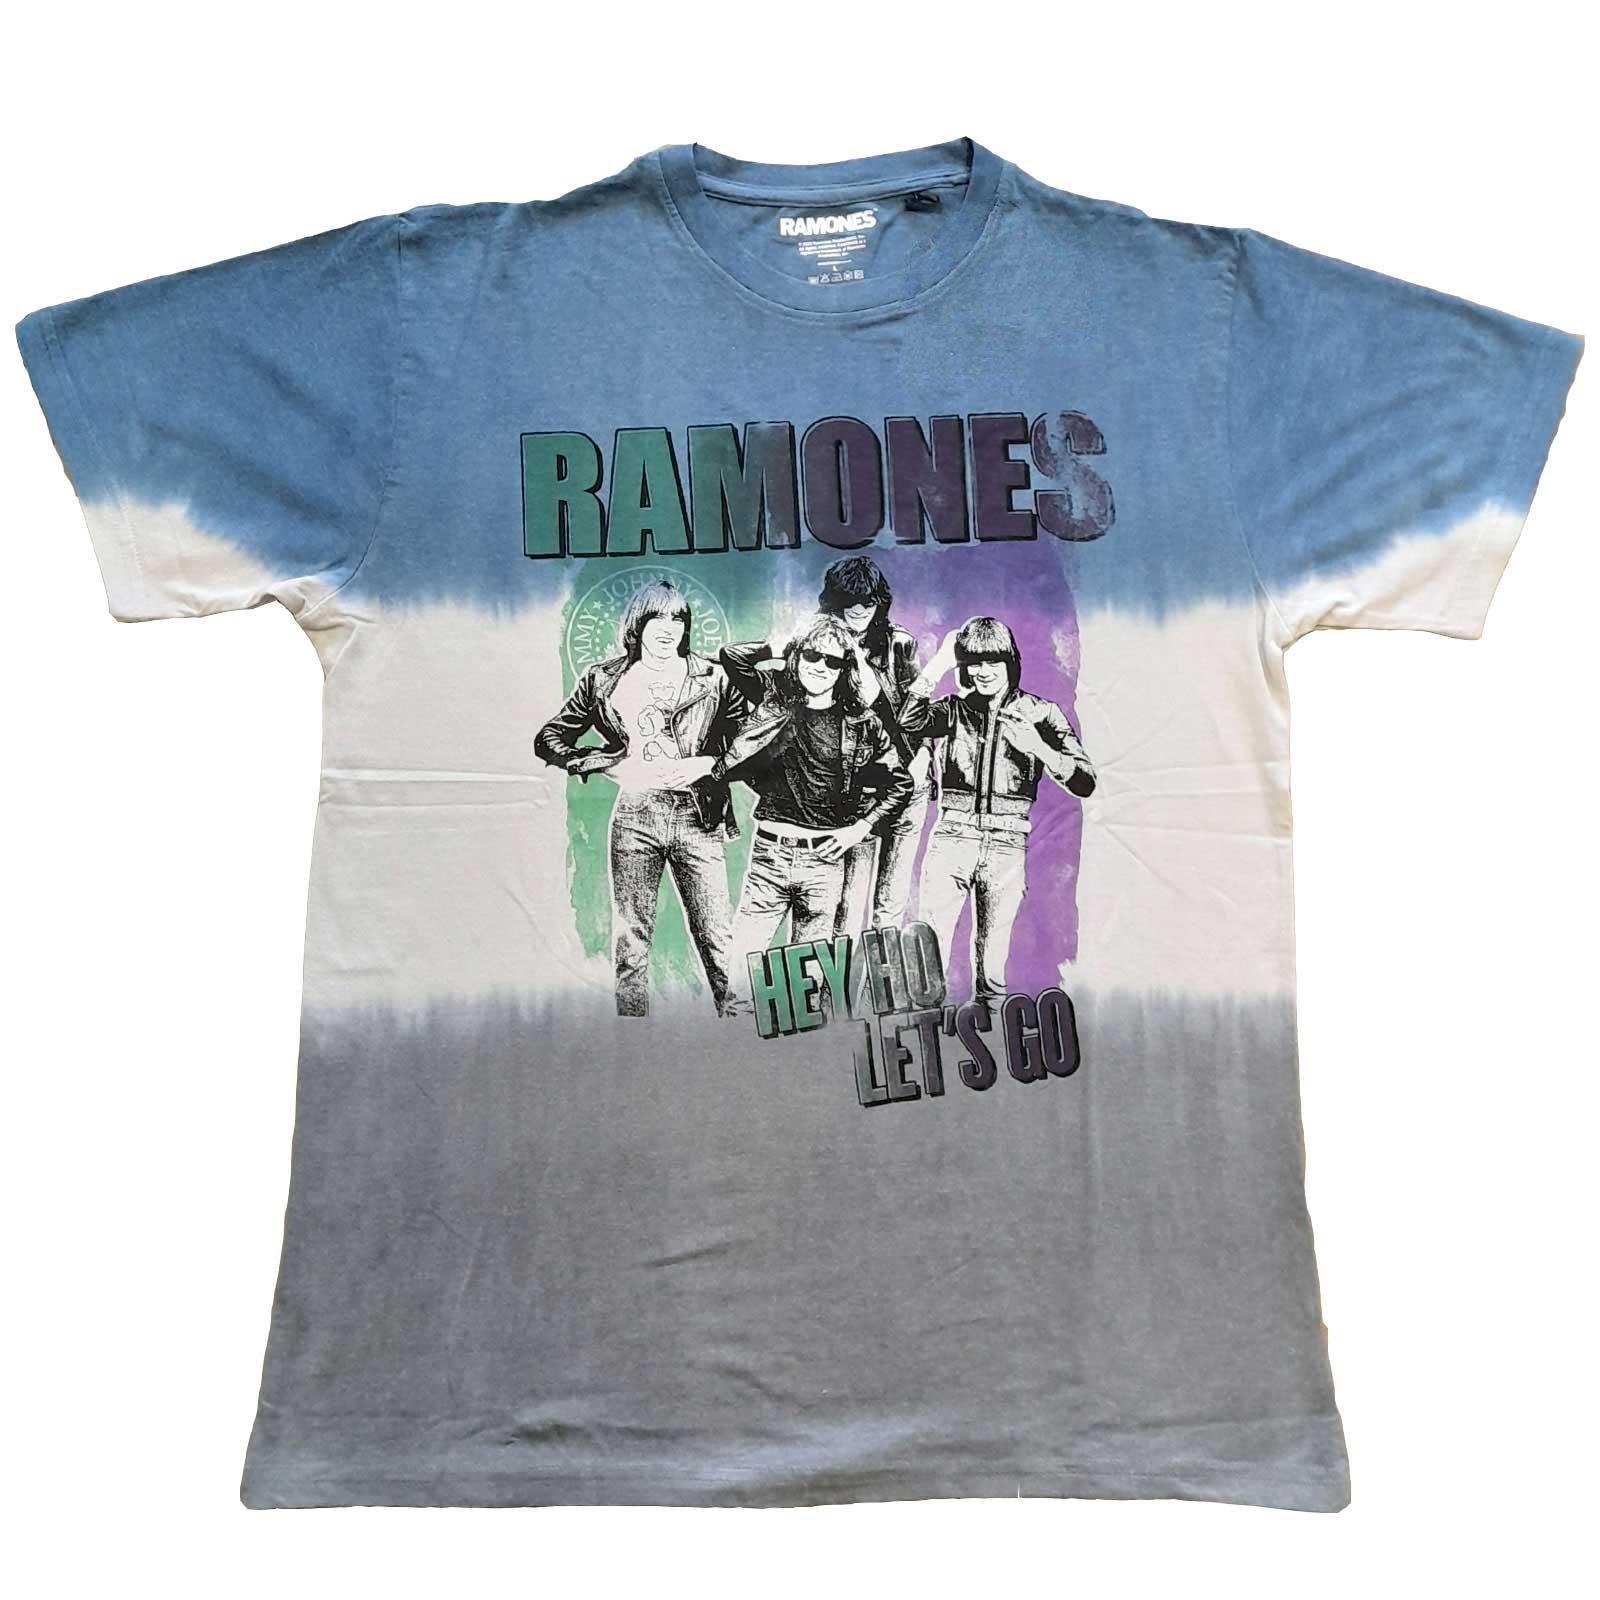 Hey Ho Retro Tshirt Damen Blau L von Ramones